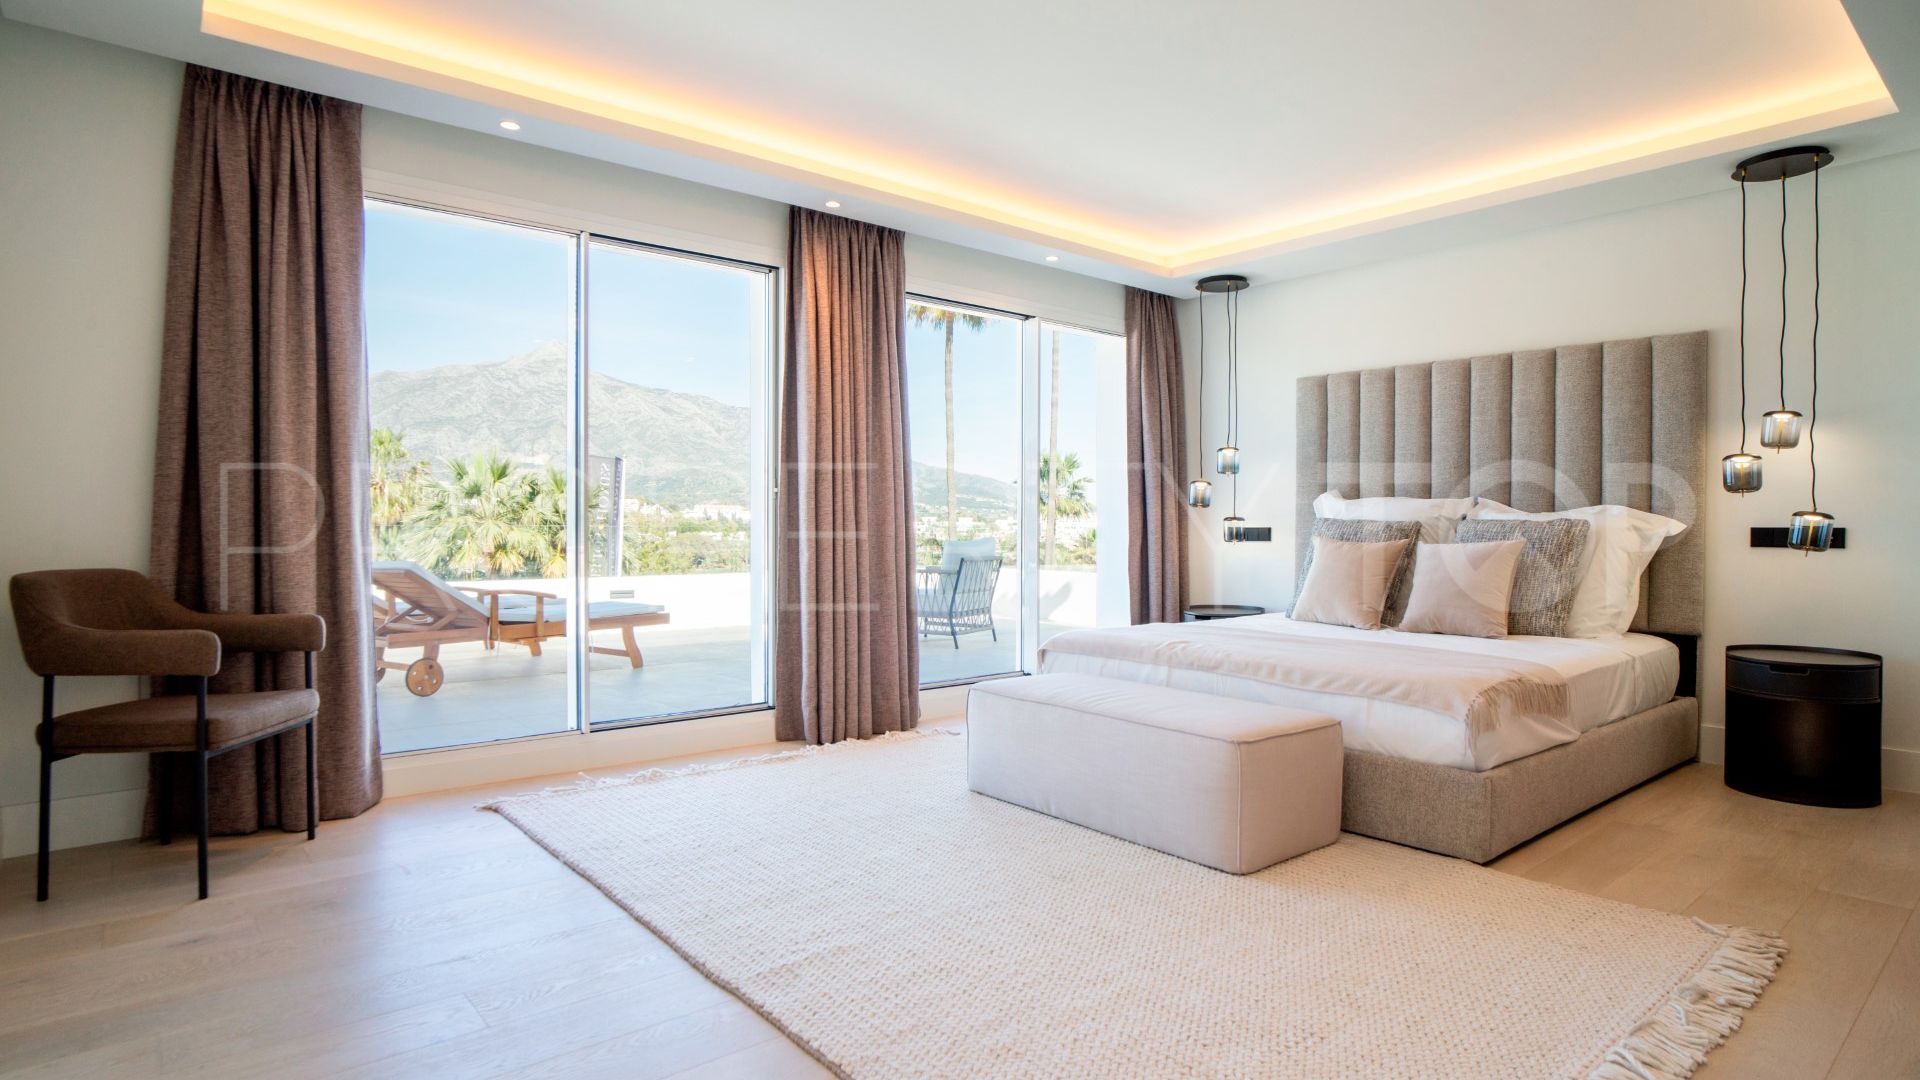 For sale 5 bedrooms villa in Las Brisas